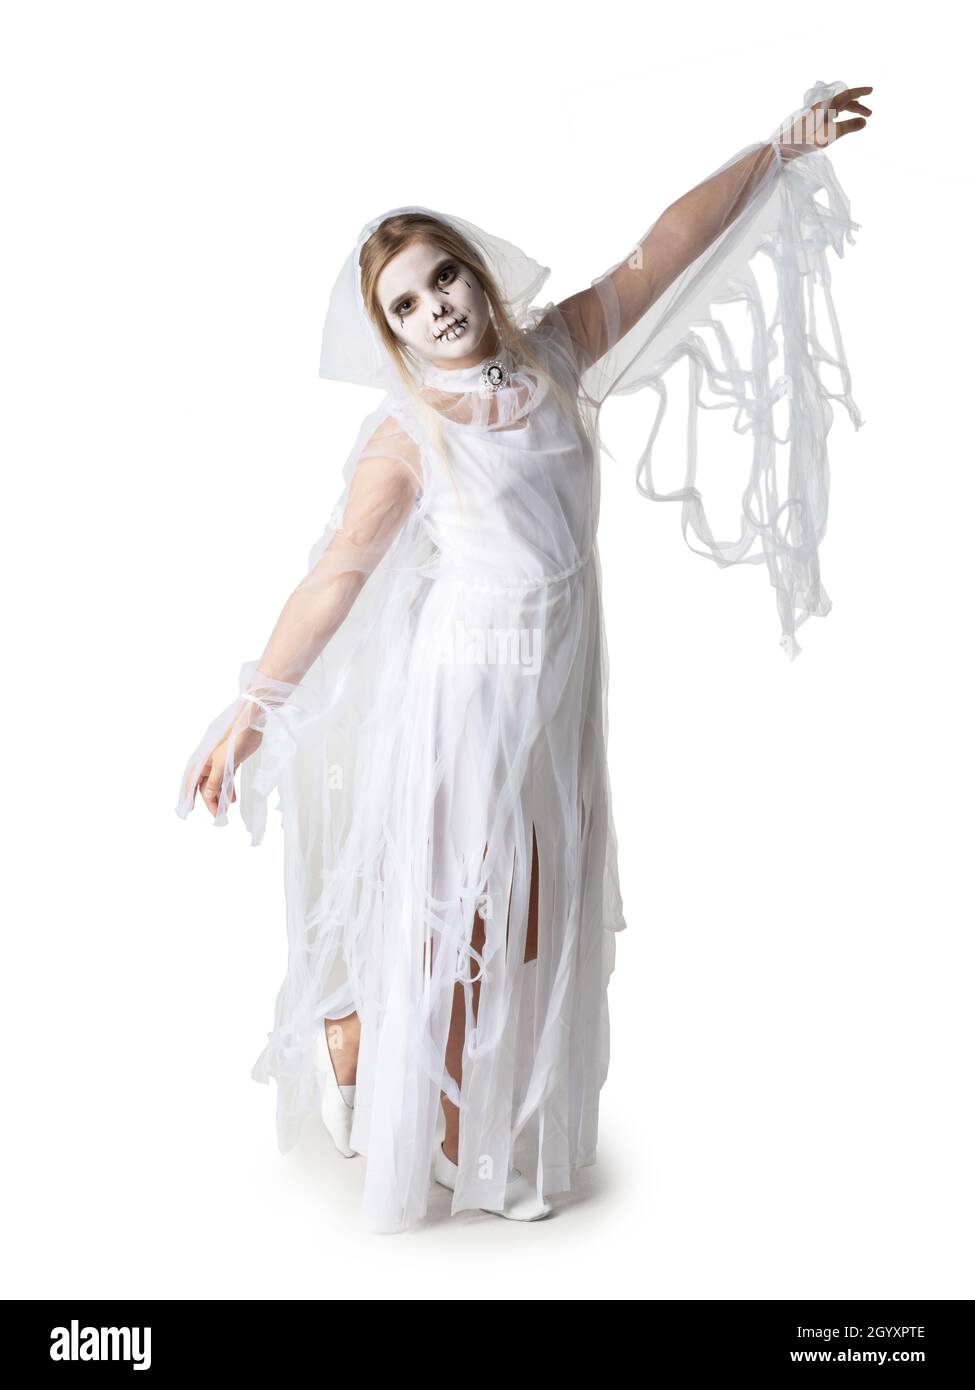 Kleines Mädchen in Halloween Geisterkostüm tanzen, Studio isoliert auf weißem Hintergrund Stockfoto